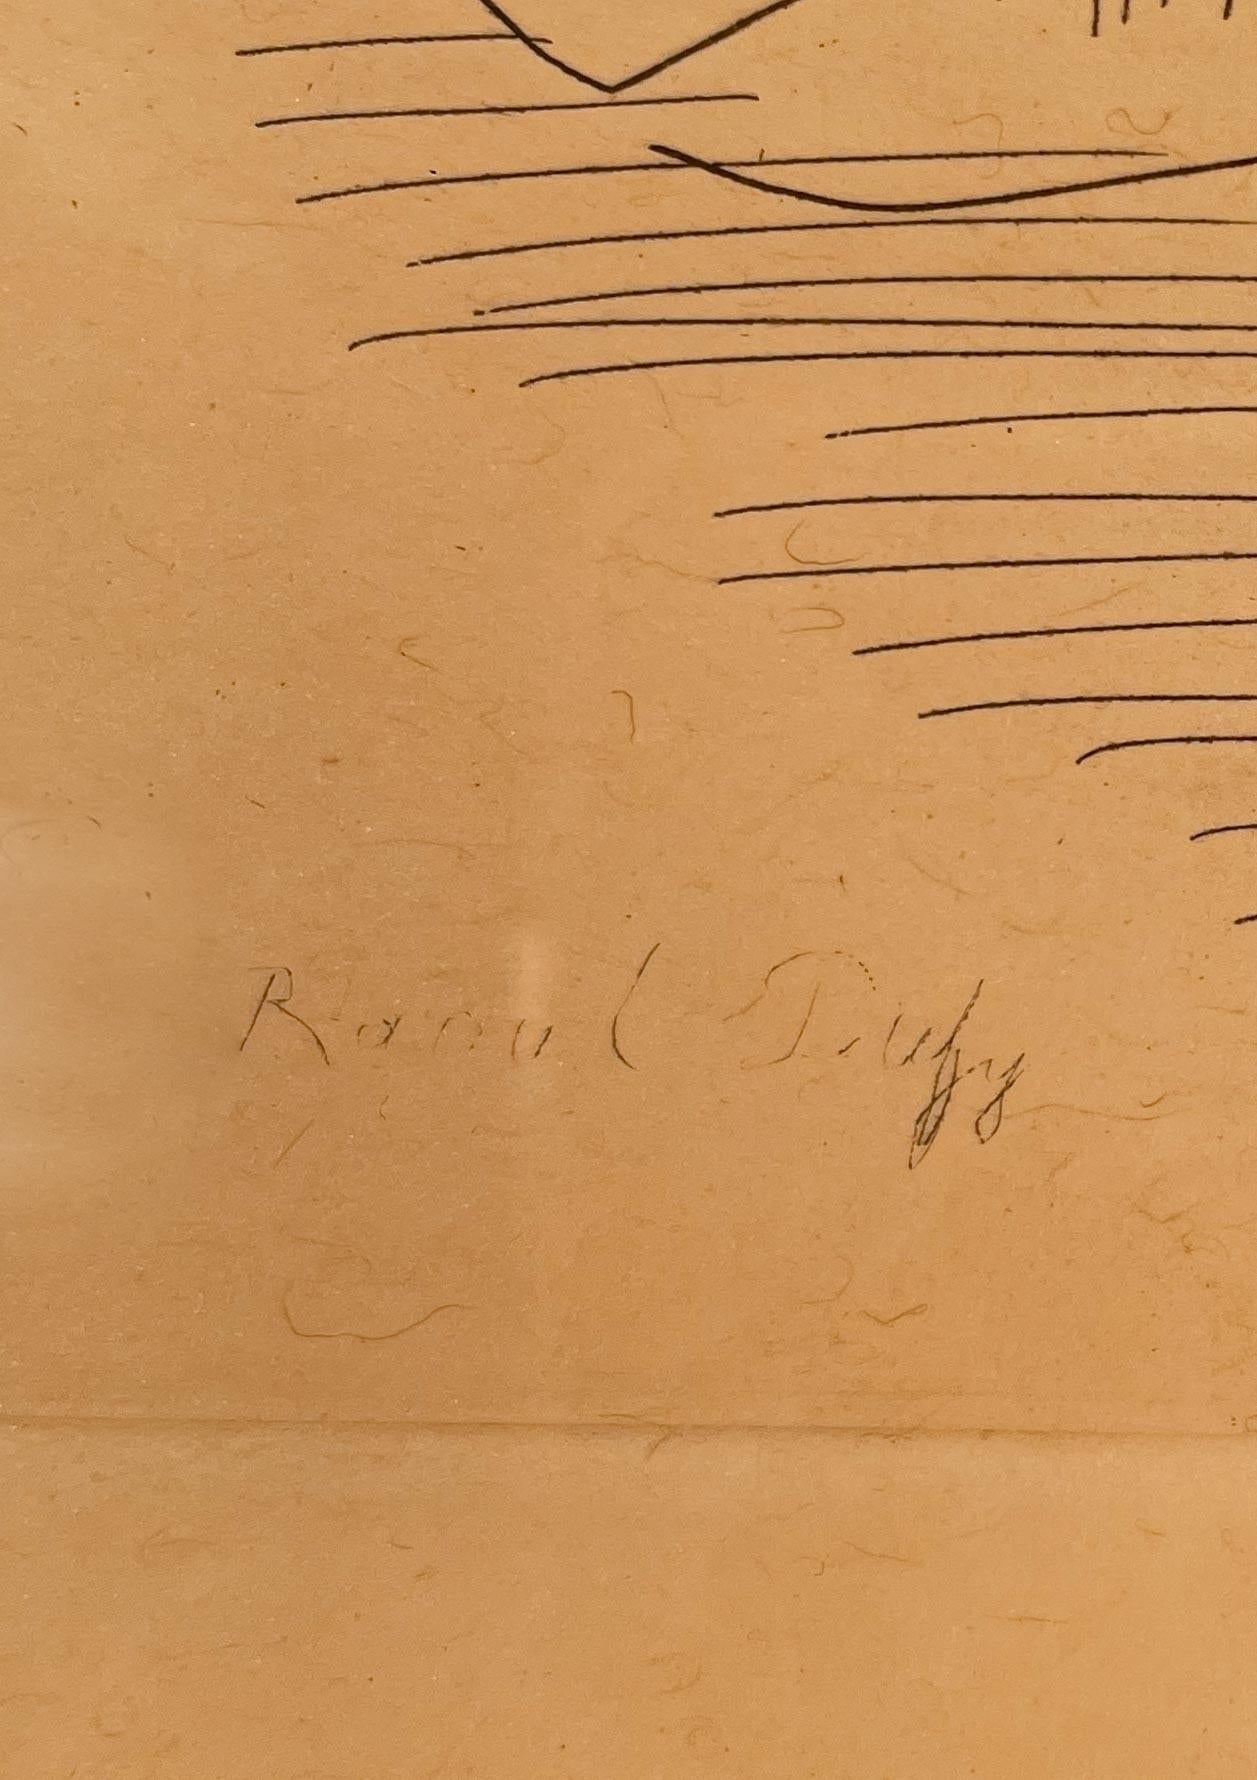 Femme allongée de Raoul Dufy (1877-1953)
Gravure sur papier
5 ½ x 7 ½ pouces non encadré (13.716 x 19.05 cm)
13 ⅝ x 15 pouces encadré (34.6202 x 38.1 cm)
Signé en bas à gauche
Edition de 19/200

Description :
Dans cette gravure, Raoul Dufy